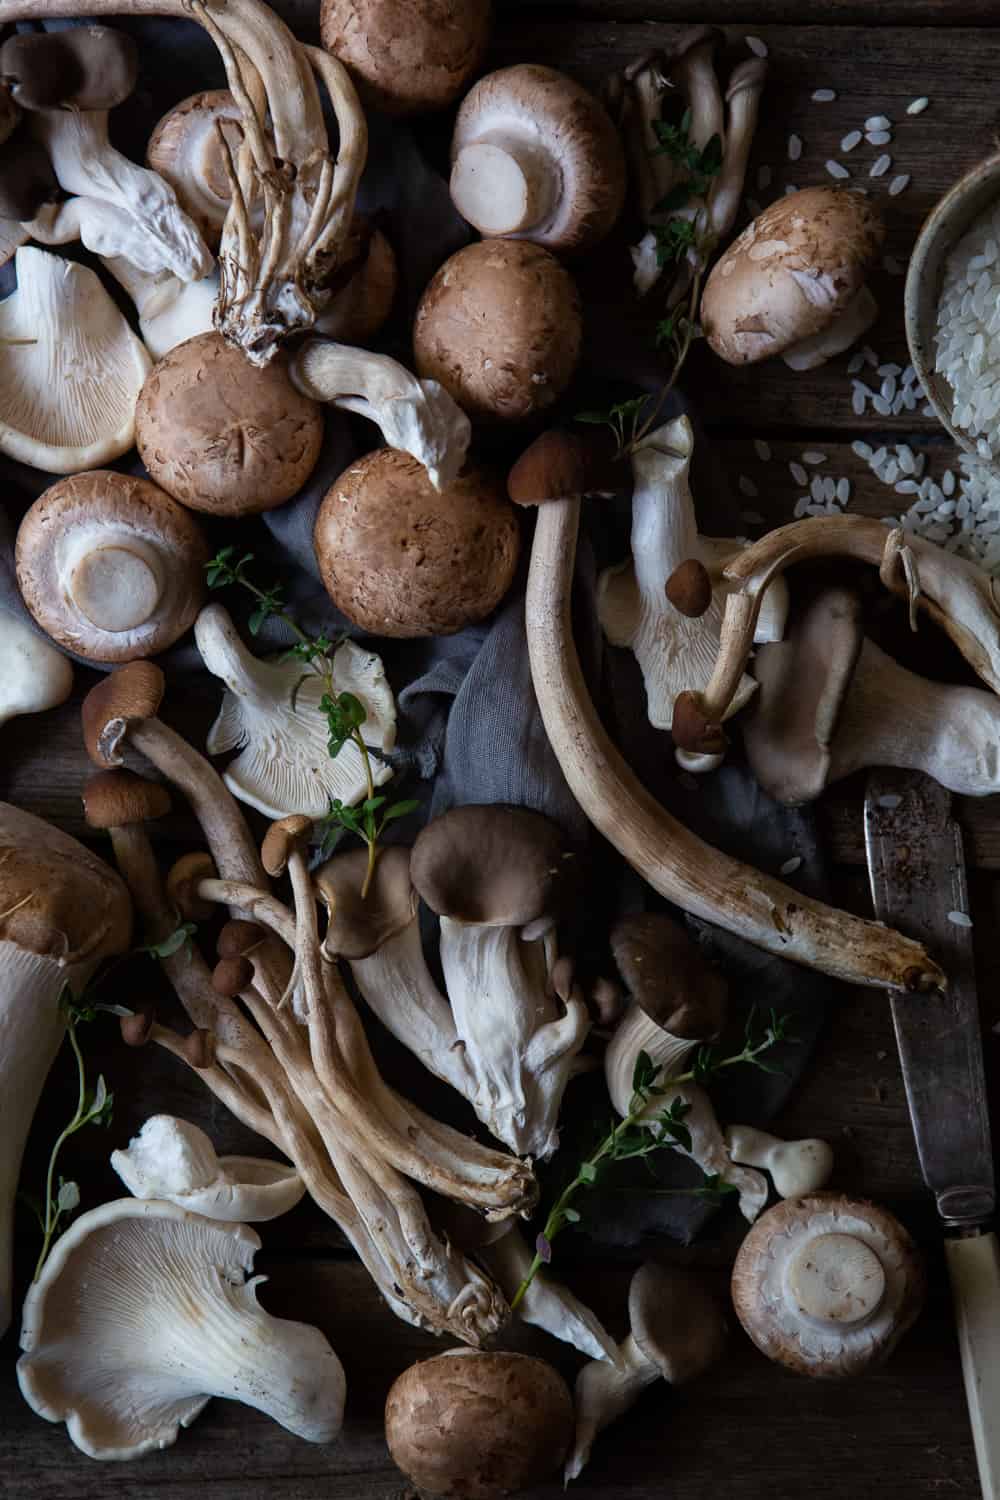 Varieties of mushrooms